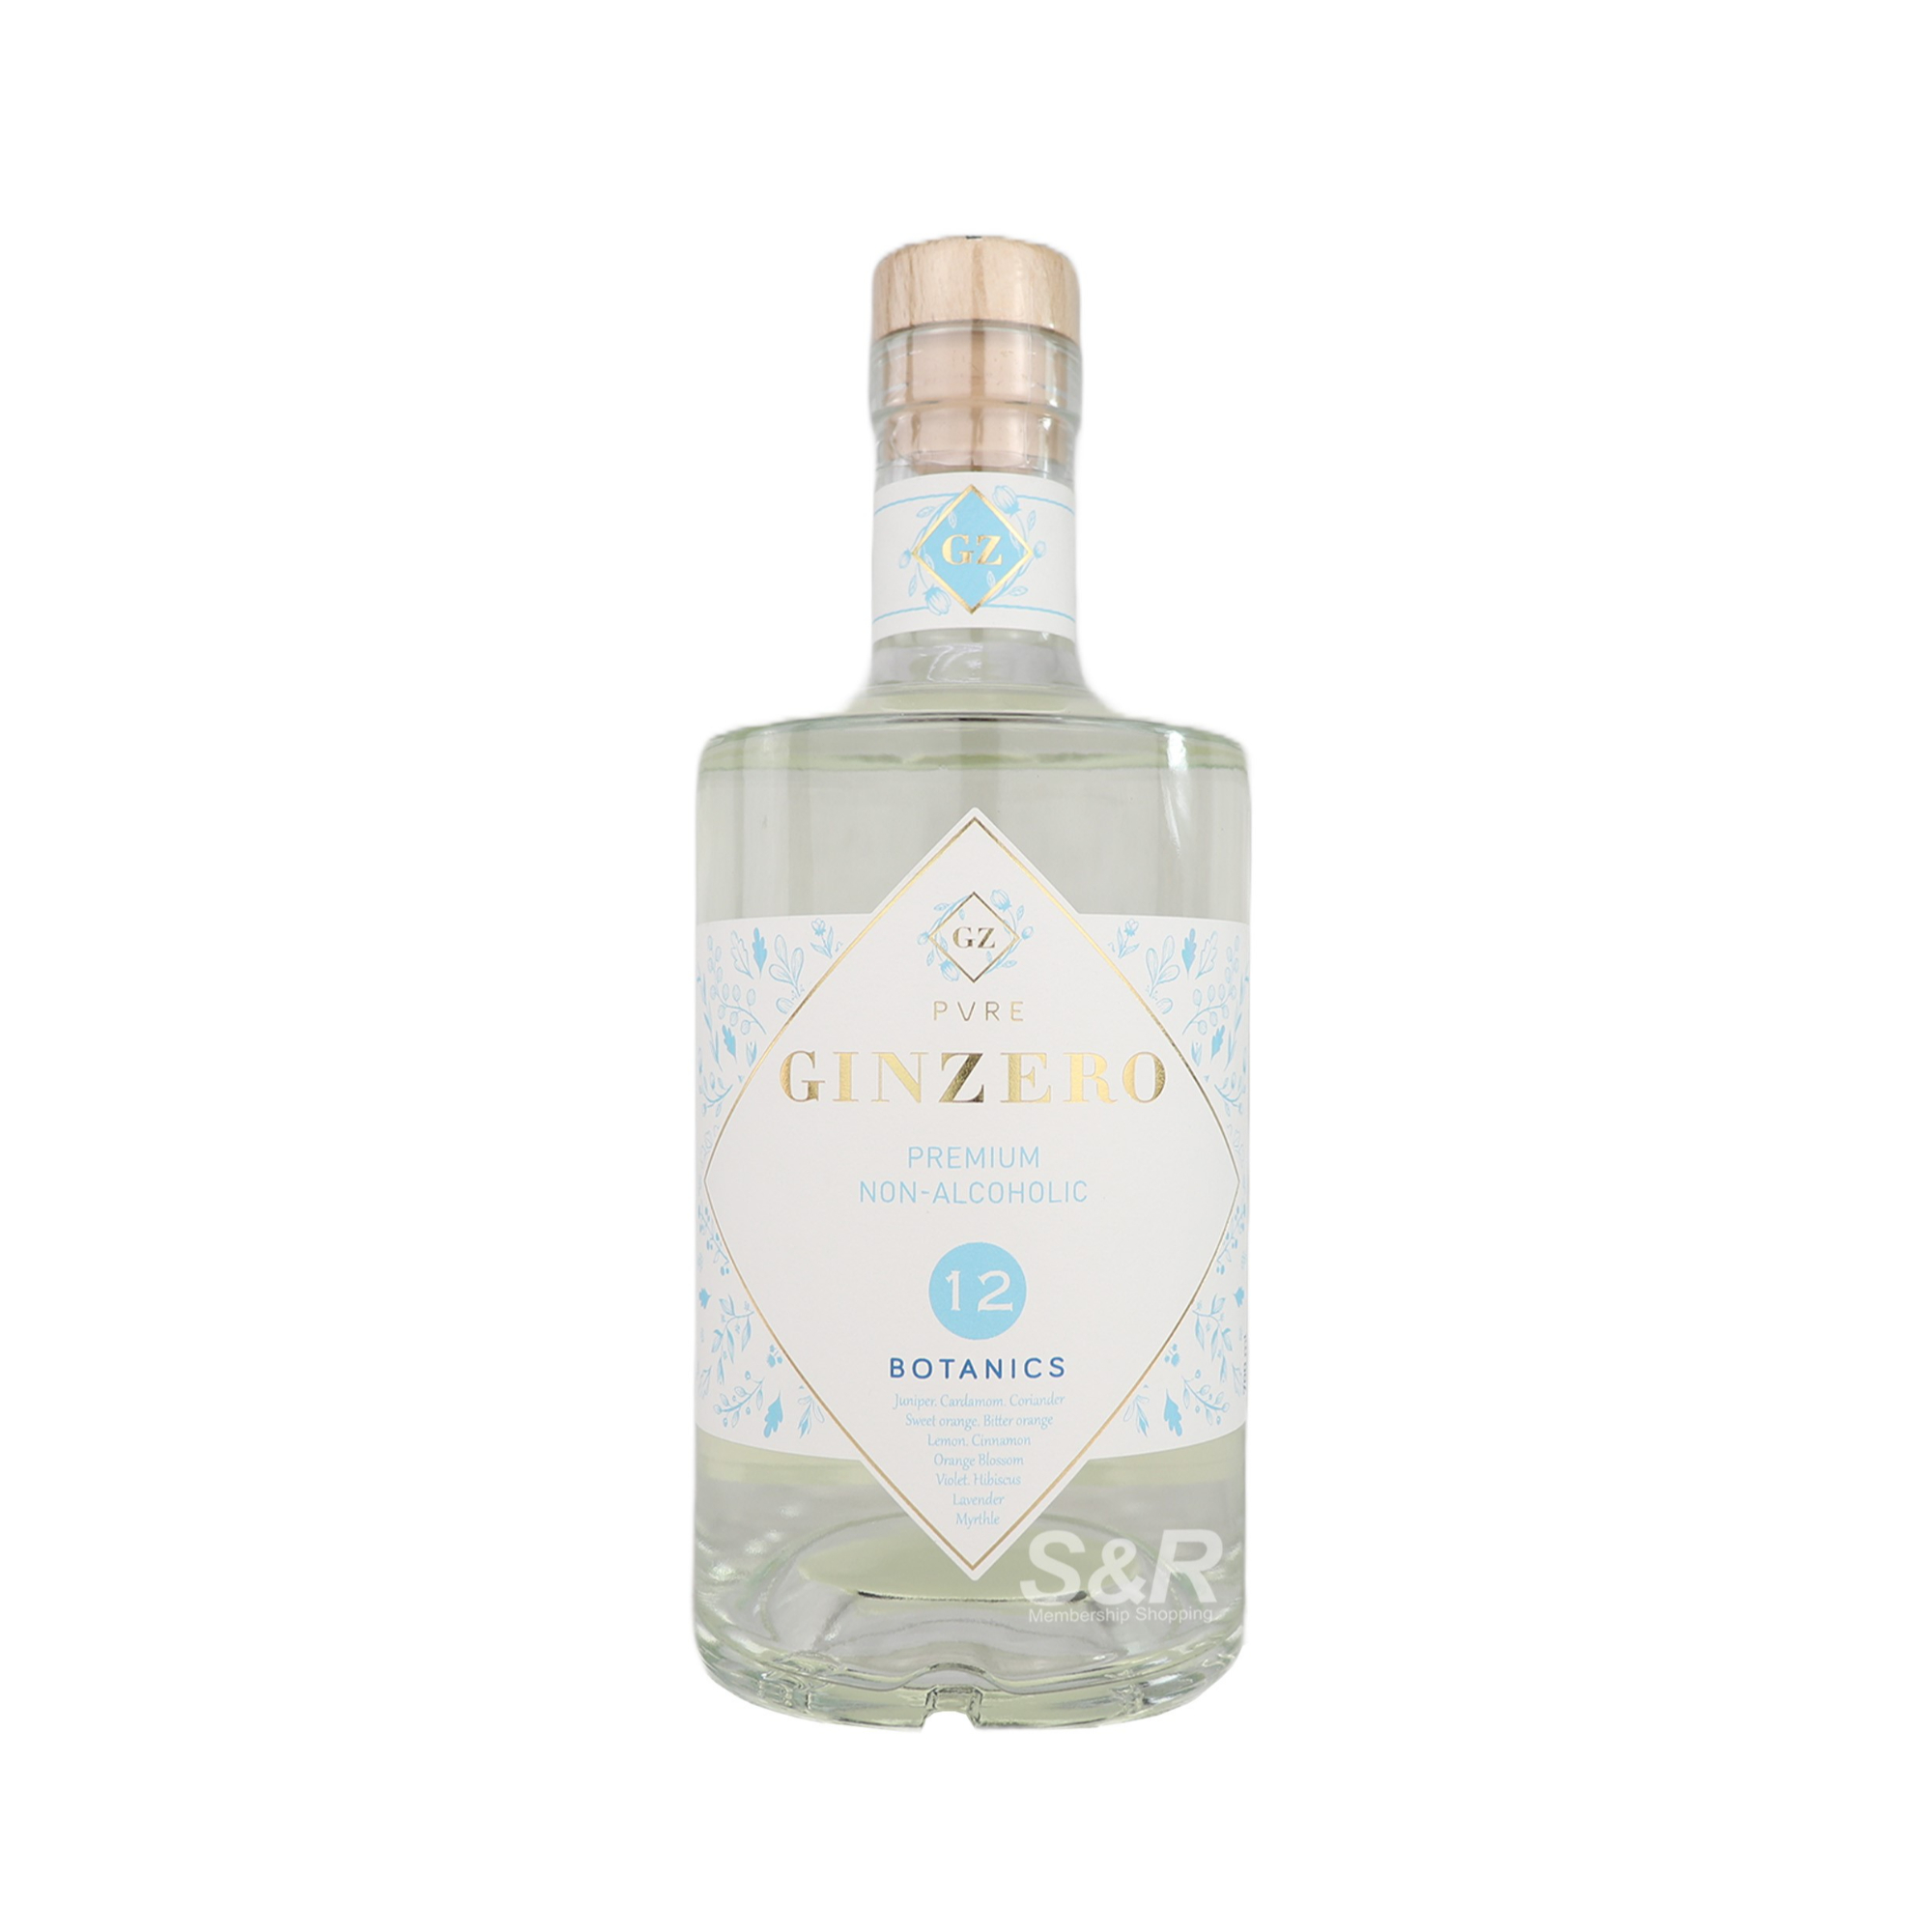 PVRE Gin Zero 12 Botanics Premium Non-Alcoholic Liquor 700mL